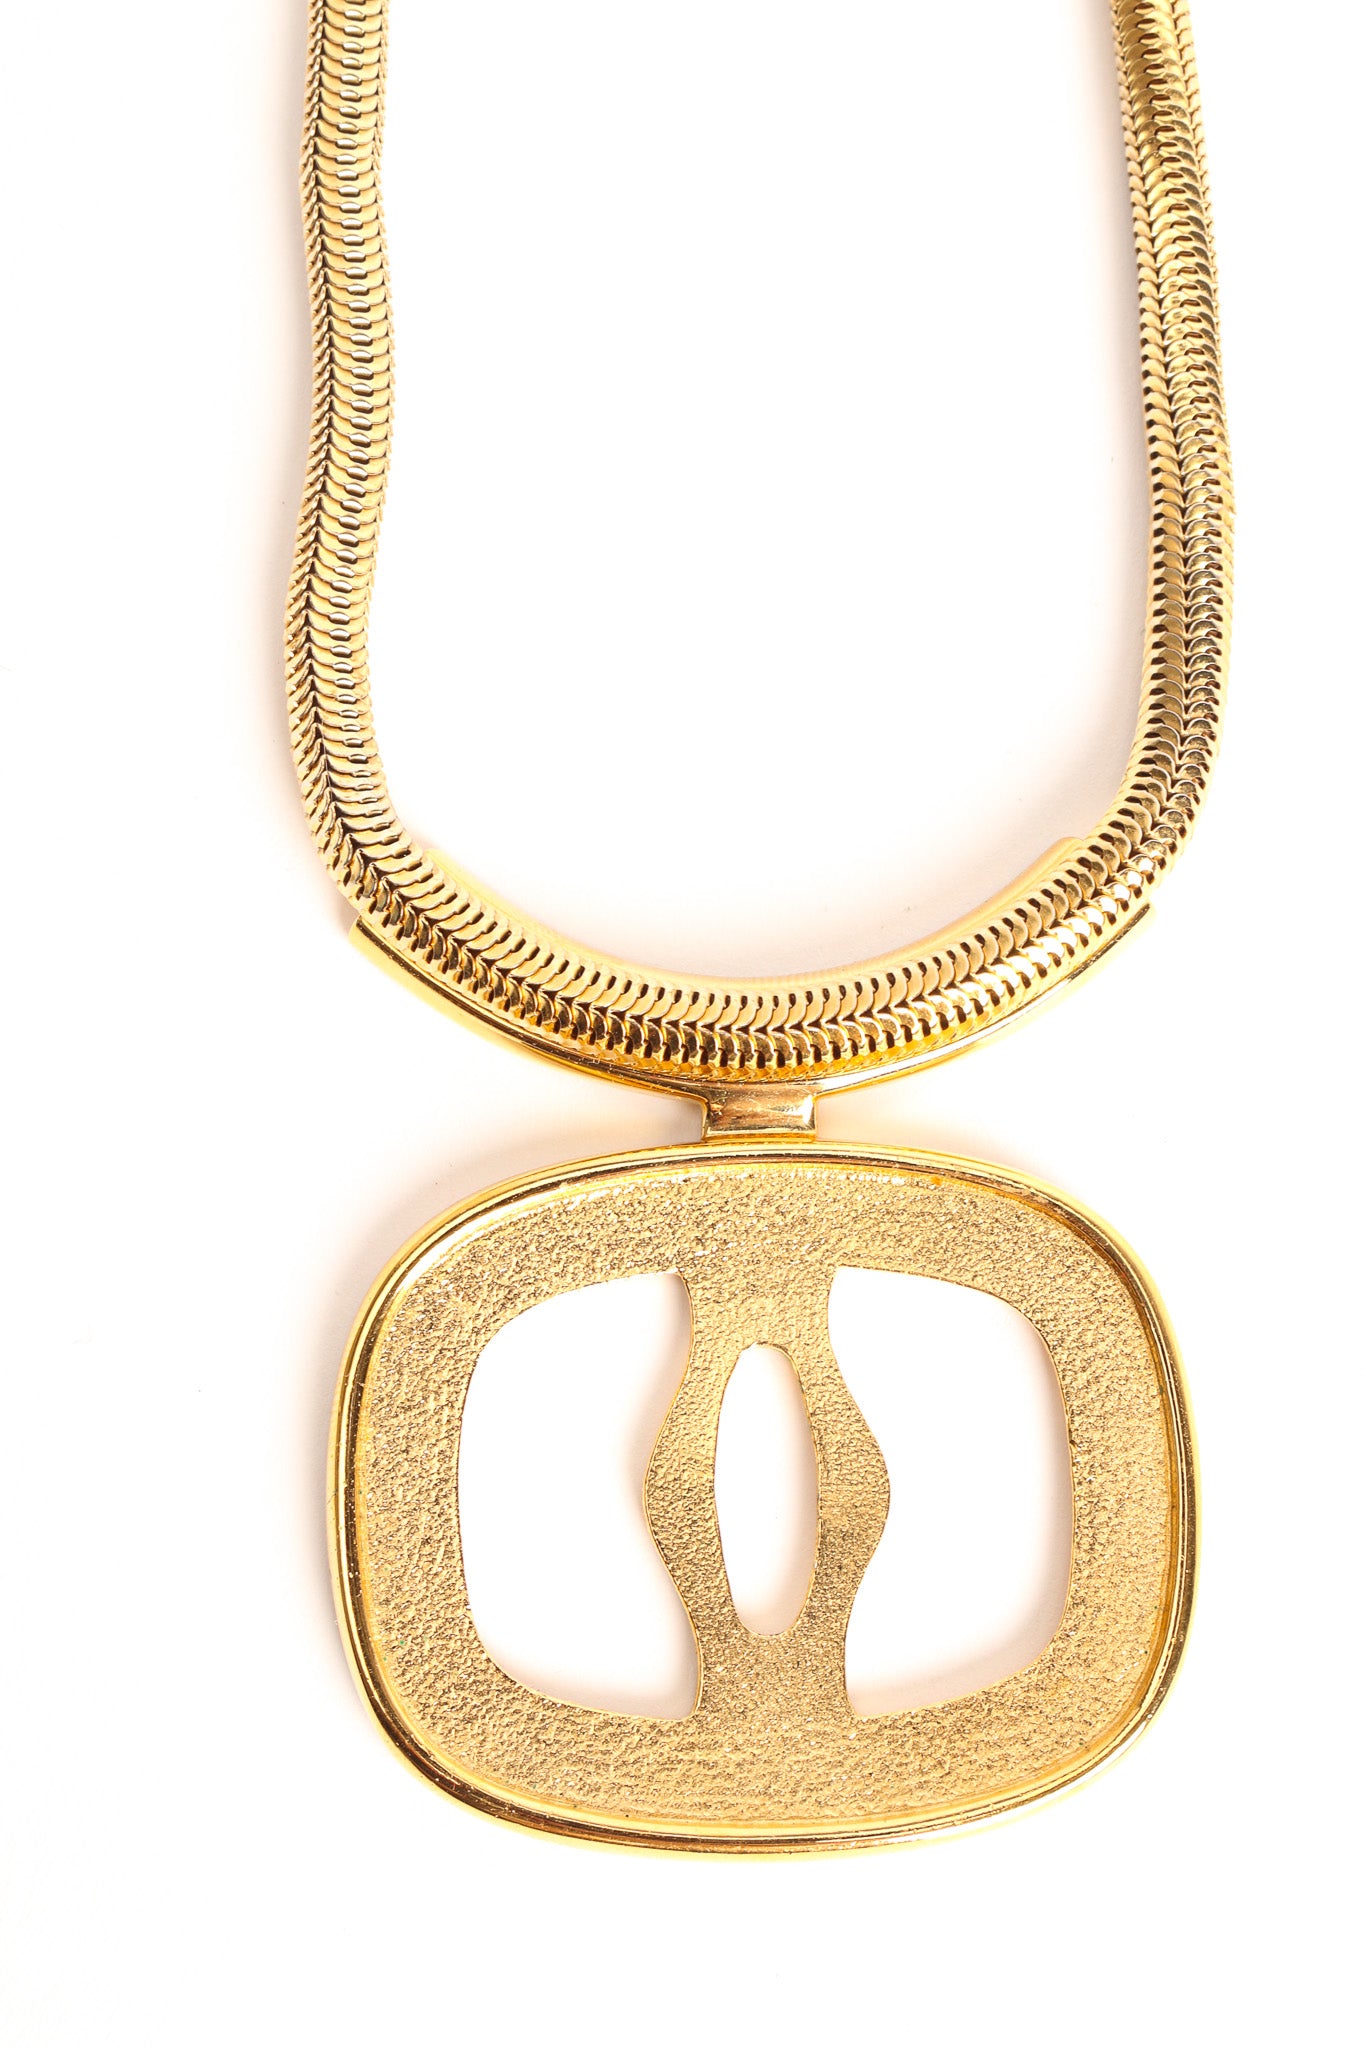 Vintage Lanvin 3 Pendant Necklace Boxed Set necklace pendant without pendant @ Recess LA